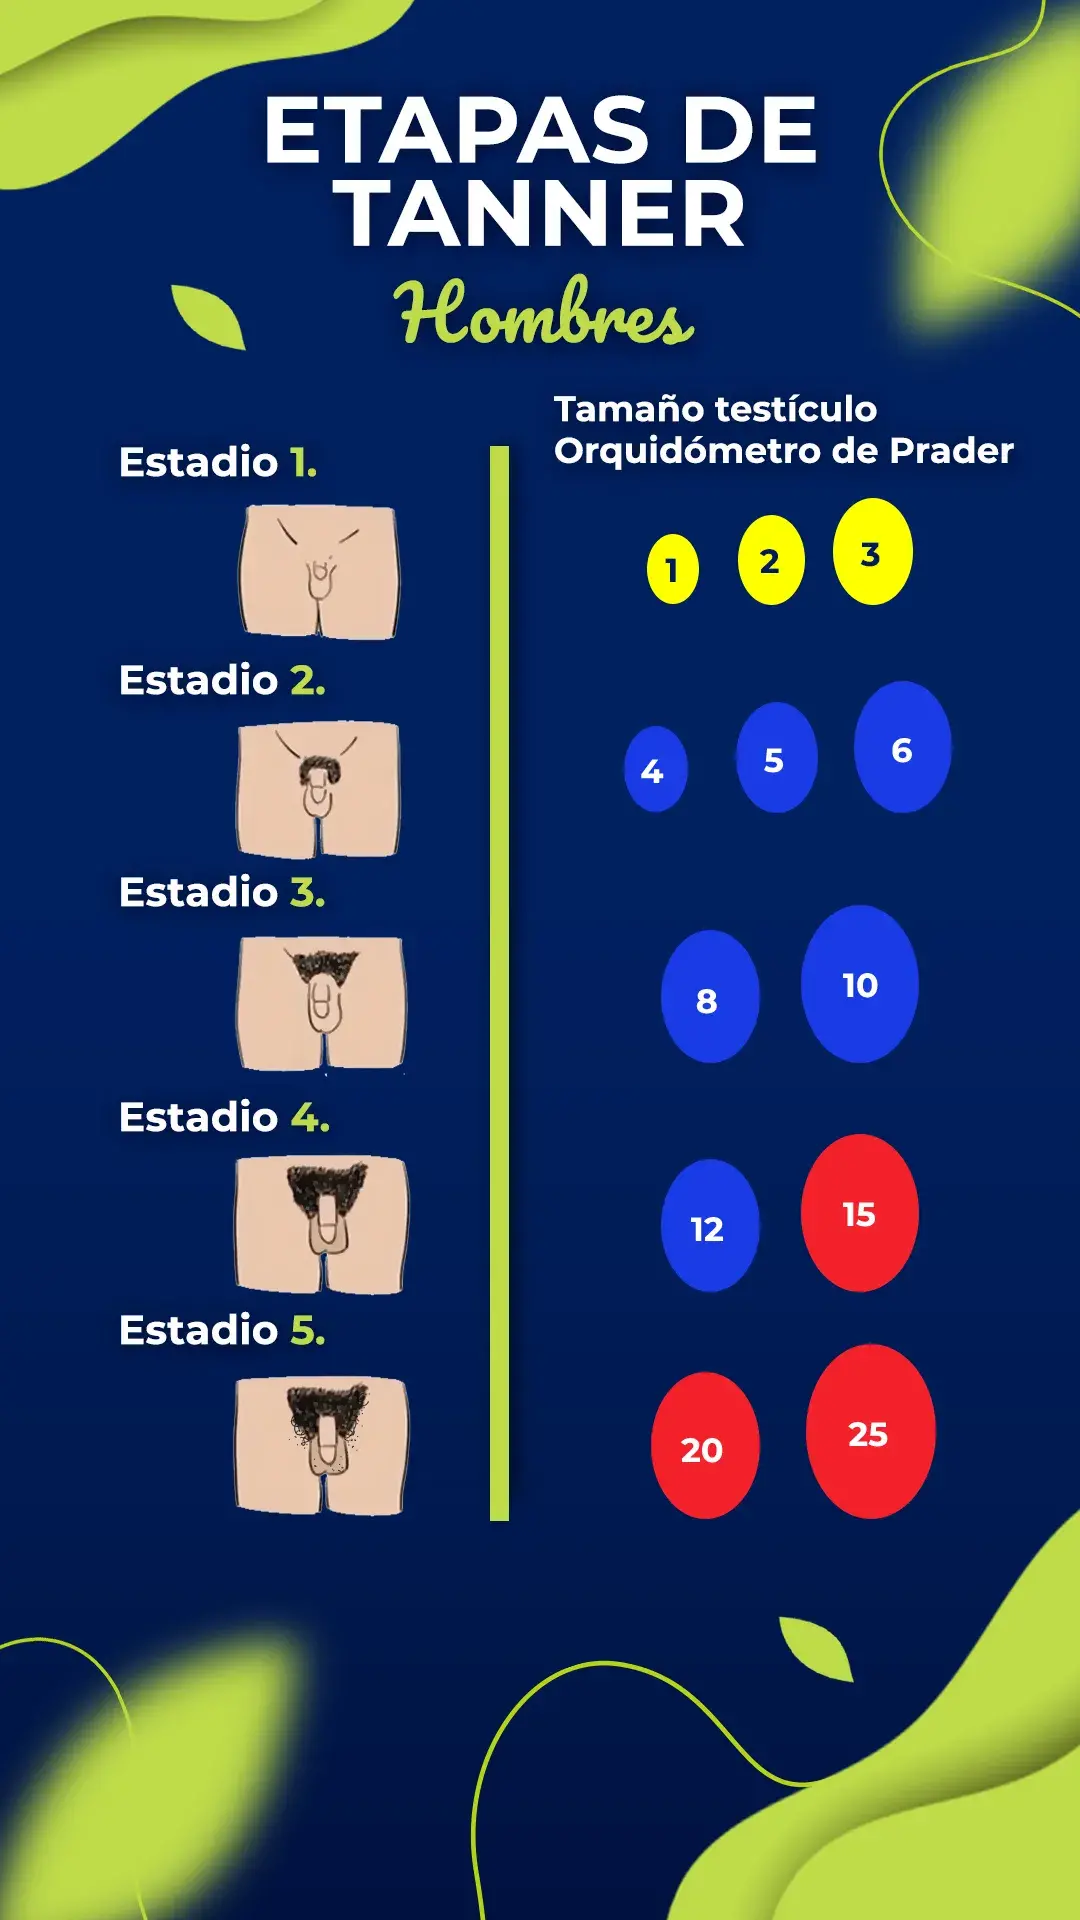 Comparación testicular usando orquidometro